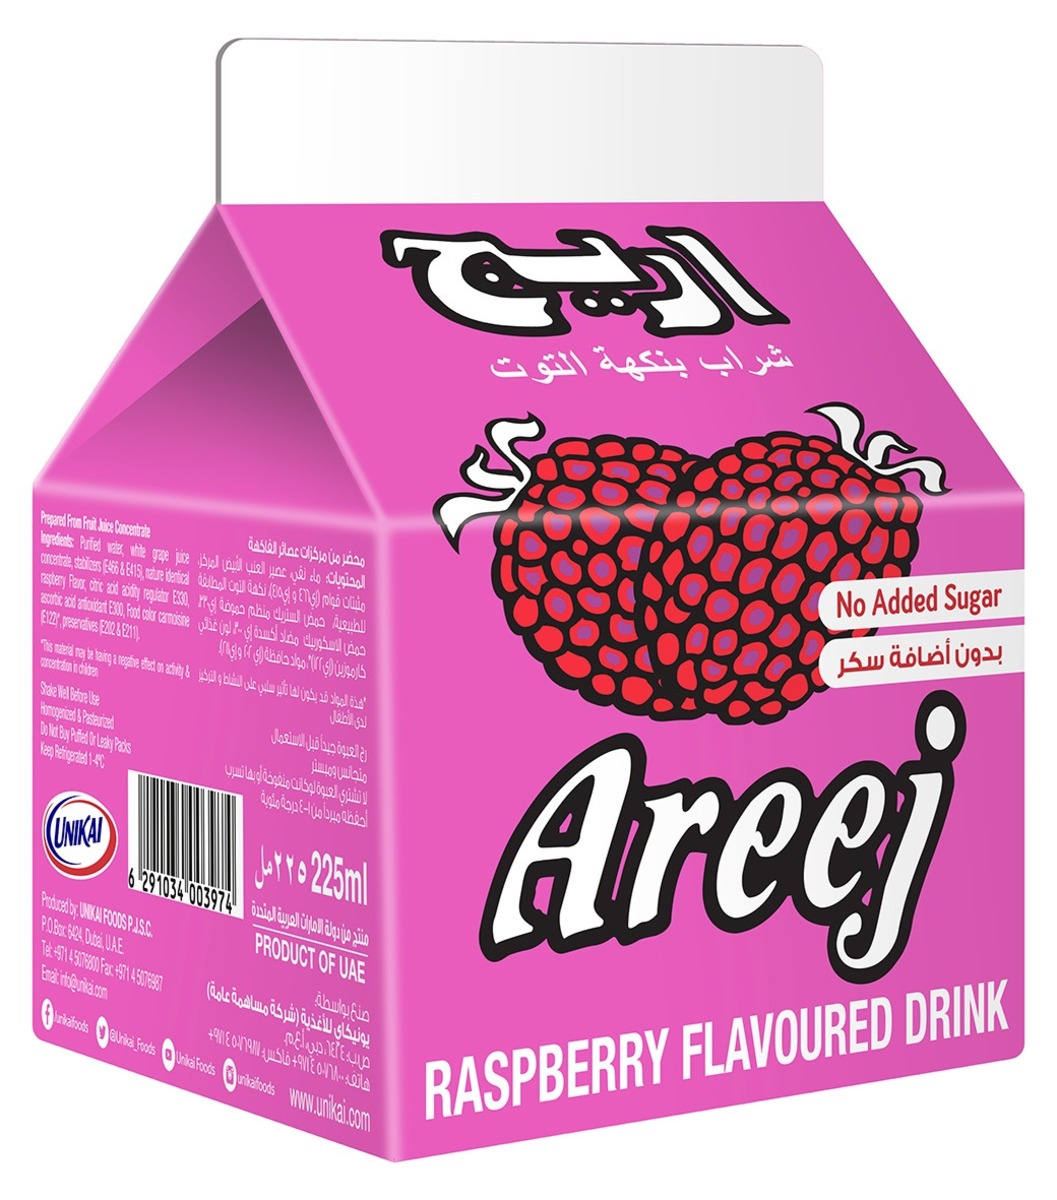 Areej Raspberry Flavoured Drink 12 x 225 ml